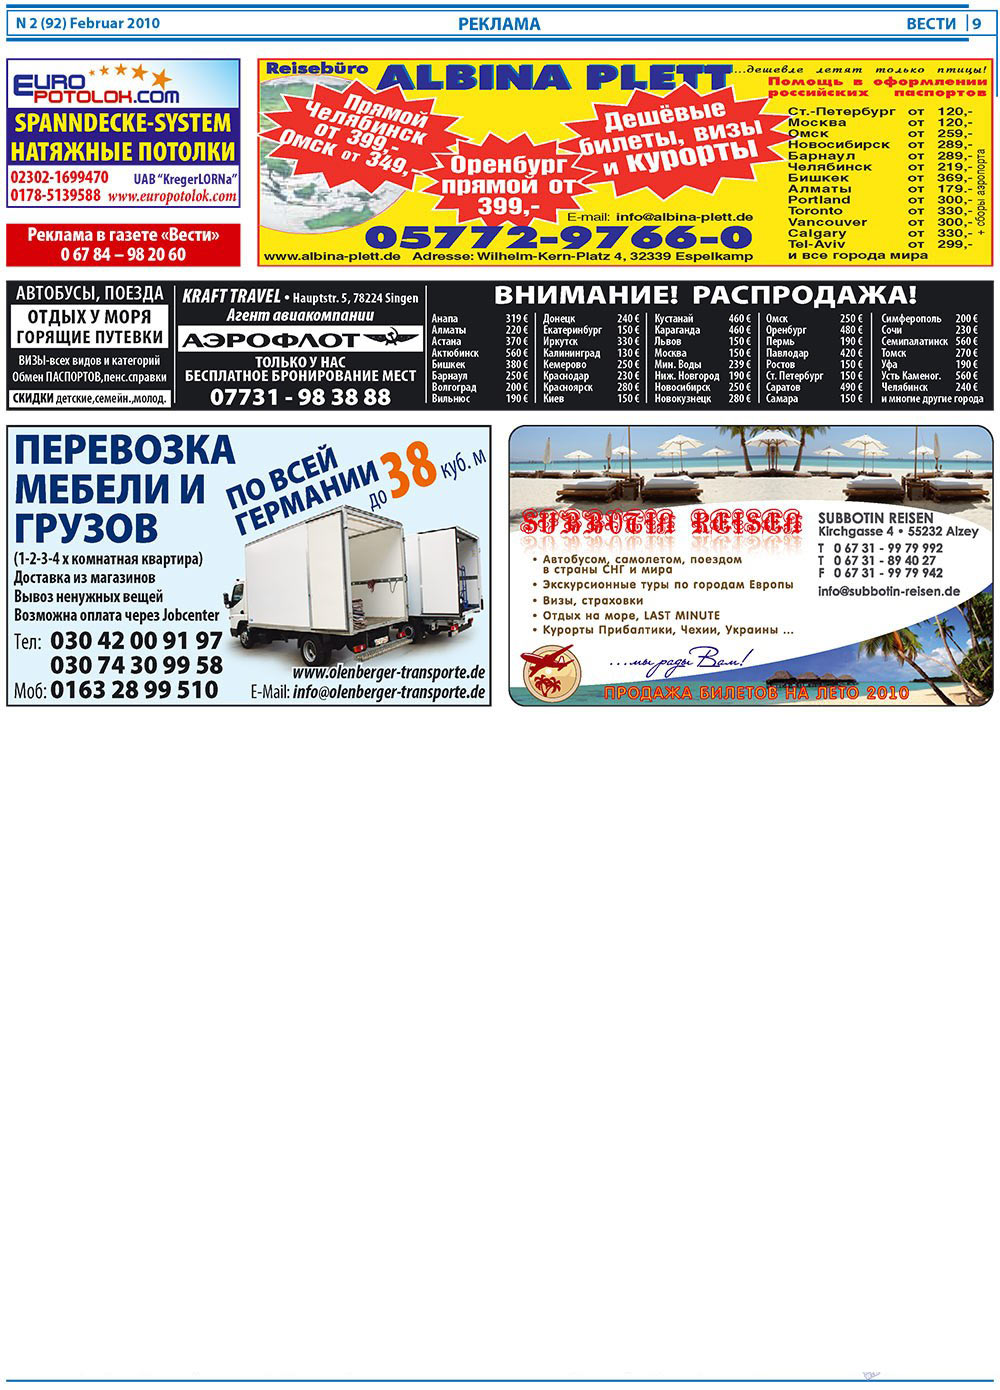 Вести, газета. 2010 №2 стр.9